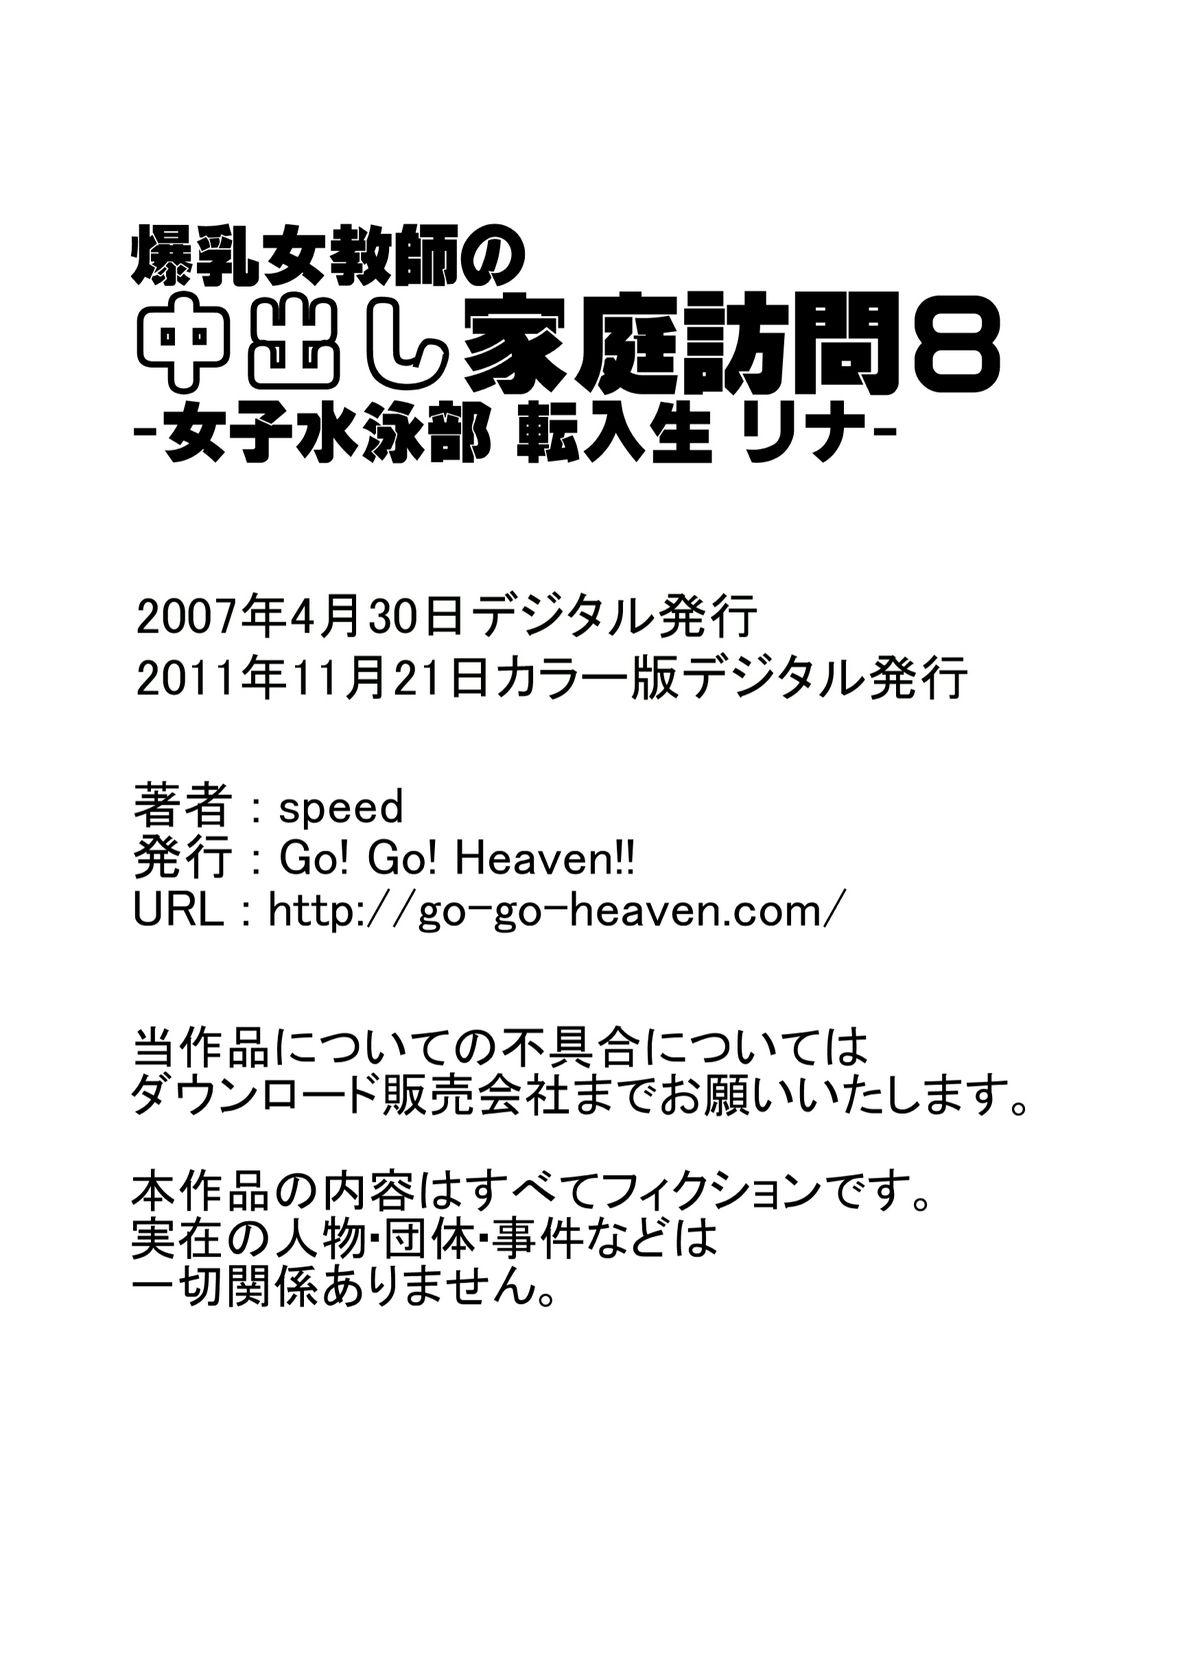 Spycam [Go! Go! Heaven!! (speed)] Bakunyuu Onna Kyoushi no Nakadashi Katei Houmon 8 Color Ban - Joshi Suiei-bu Tennyuusei Rina - Model - Page 15